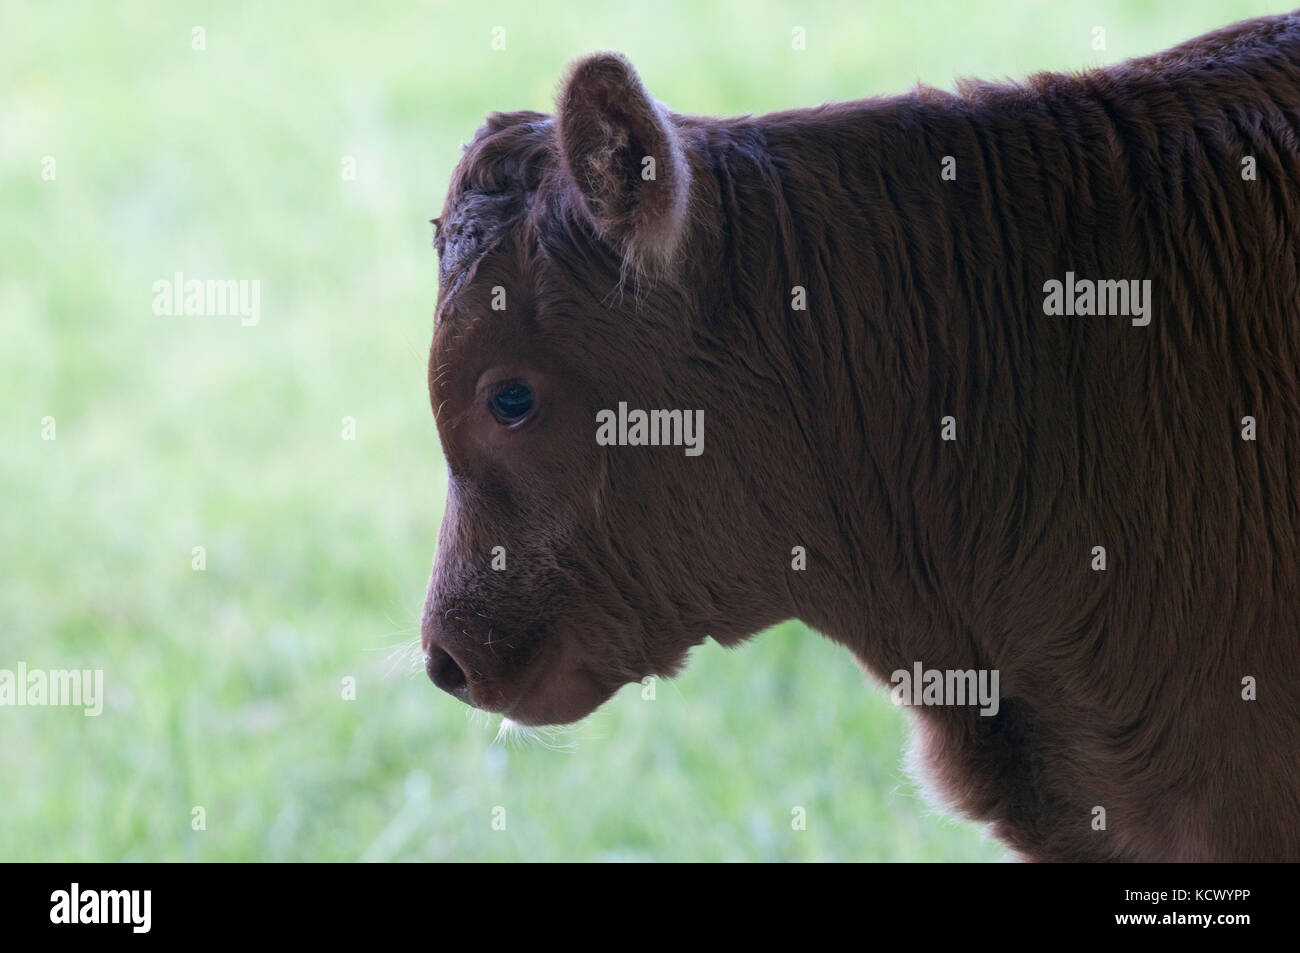 Young bullock calf Stock Photo